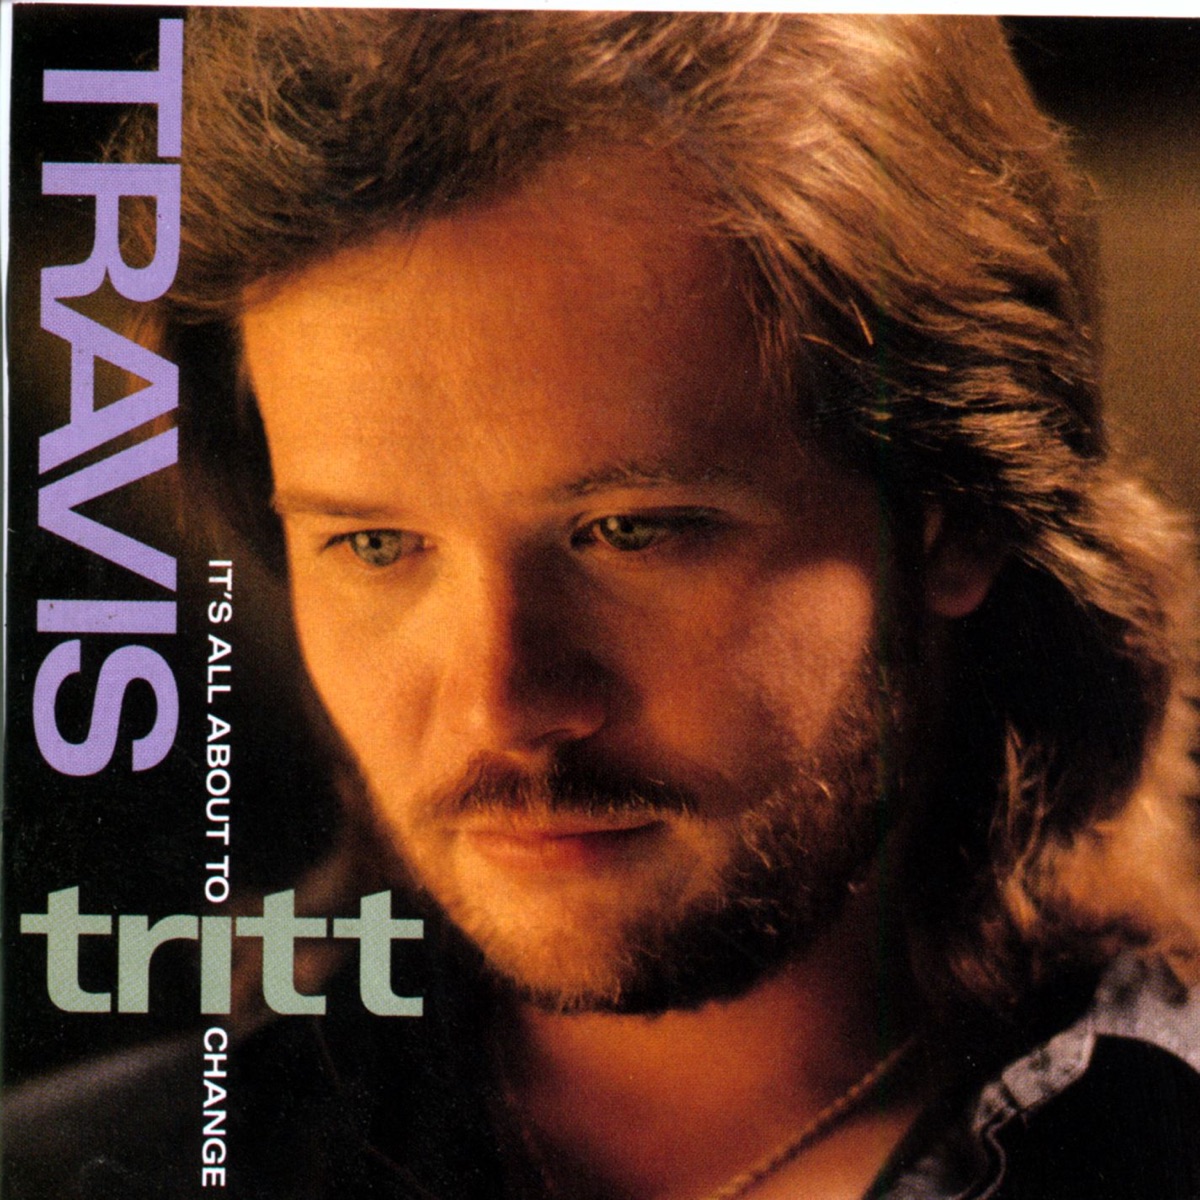 The Very Best of Travis Tritt (Remastered) - Album by Travis Tritt - Apple  Music